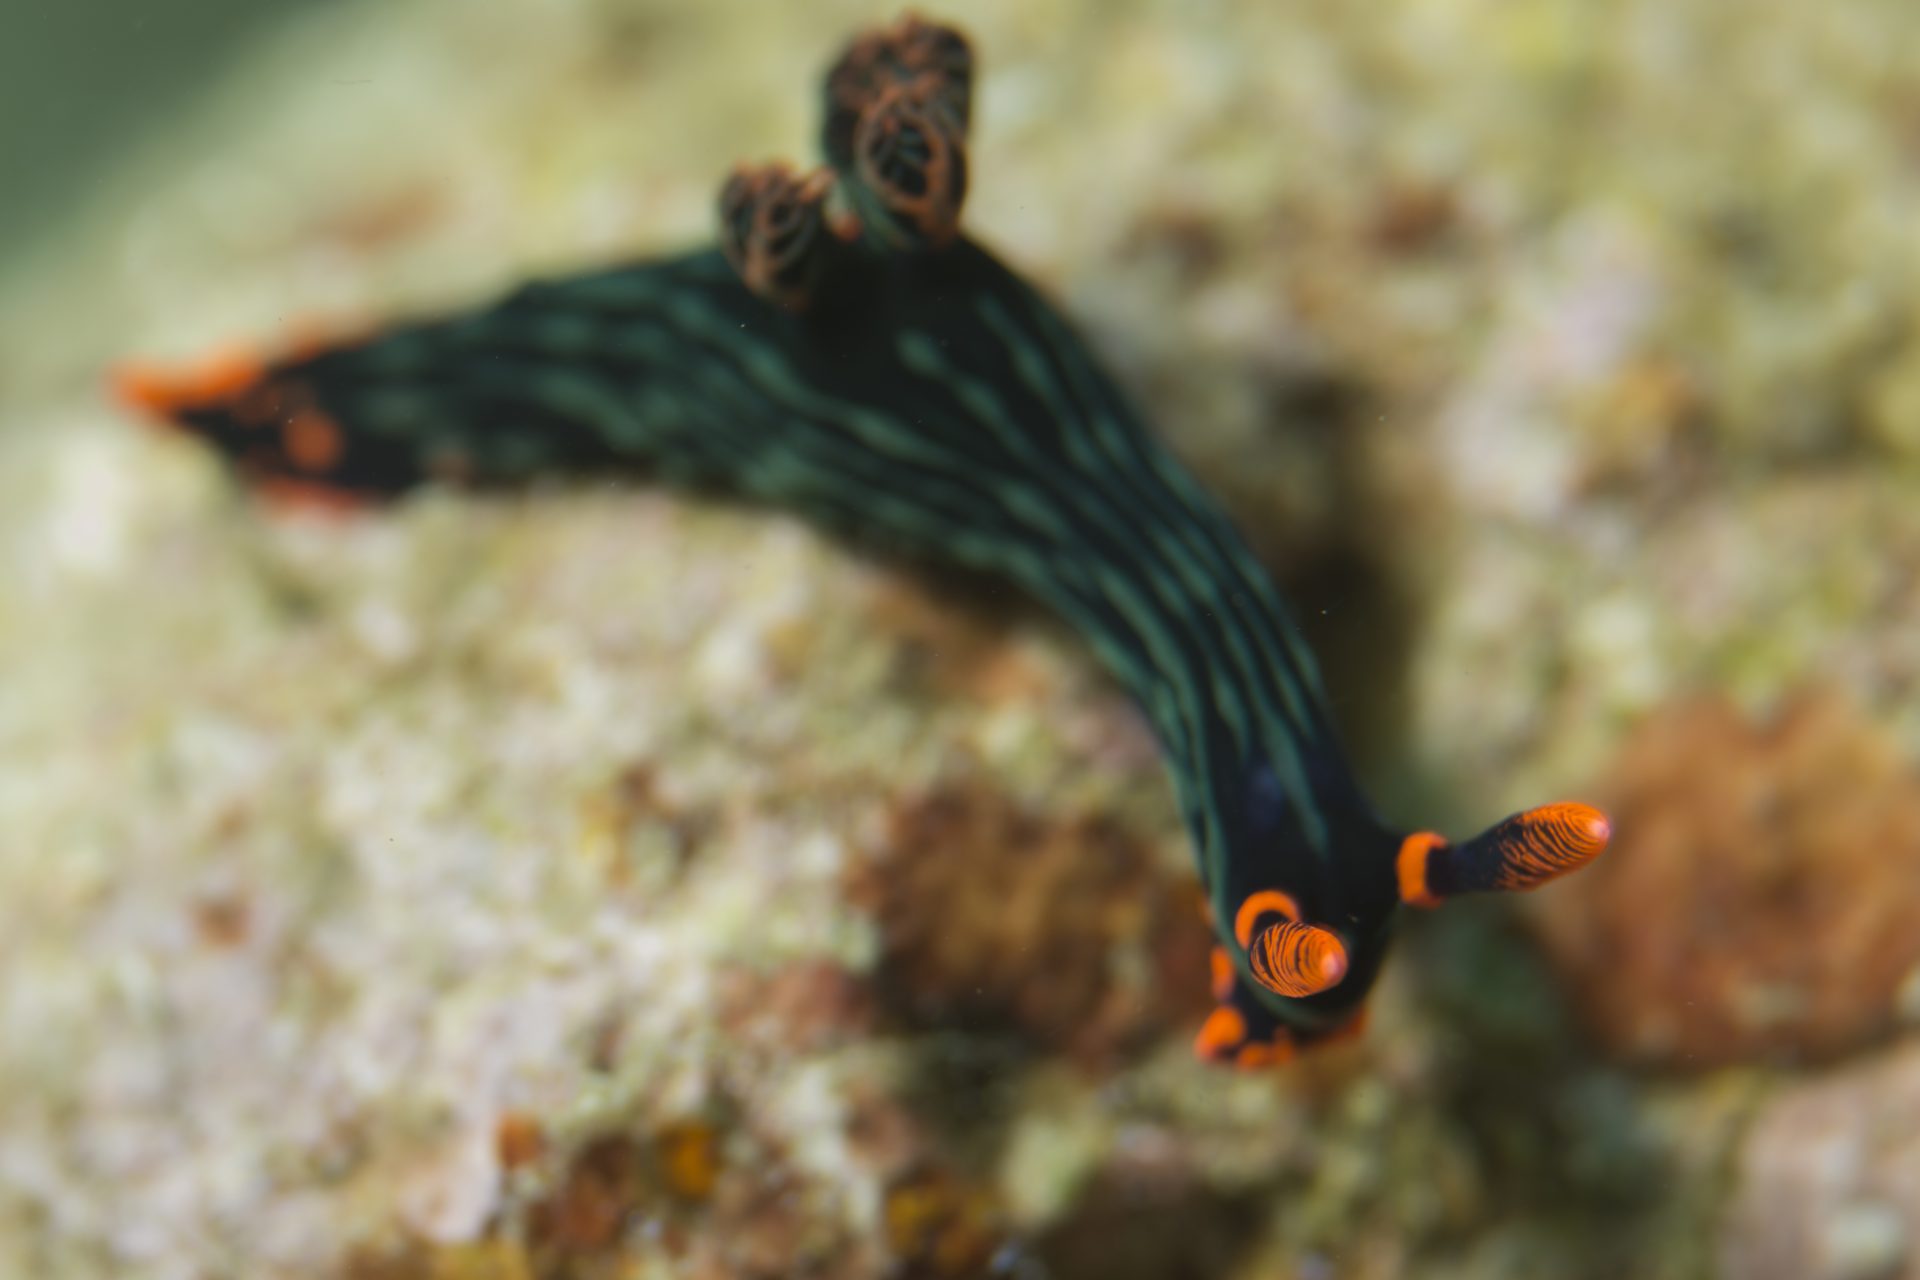 Red-flanked sea slug